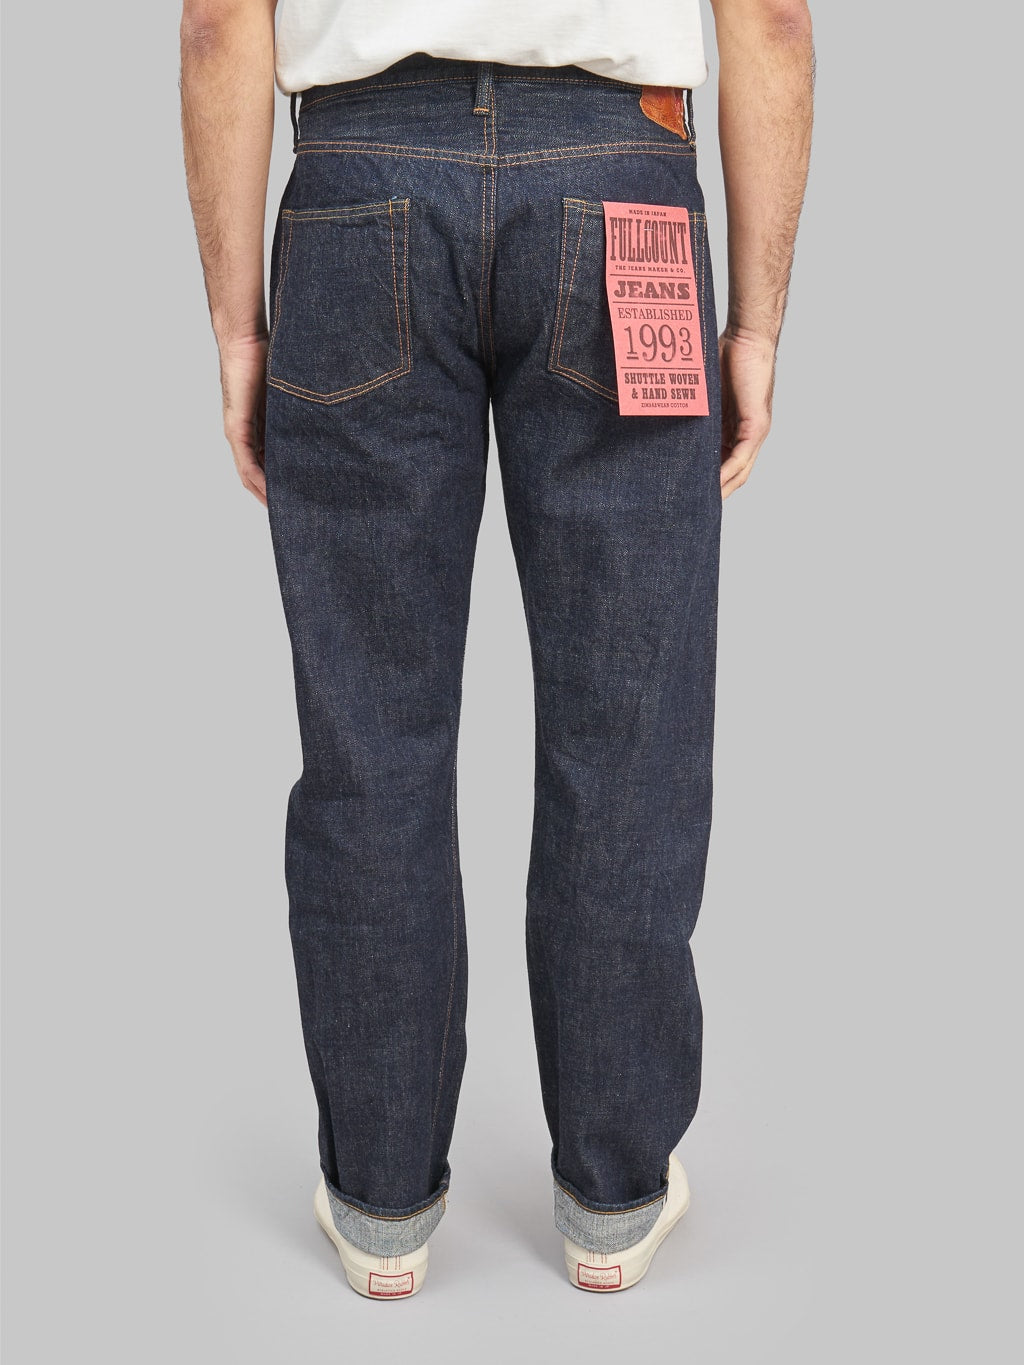 fullcount 1103 clean straight selvedge denim jeans back rise